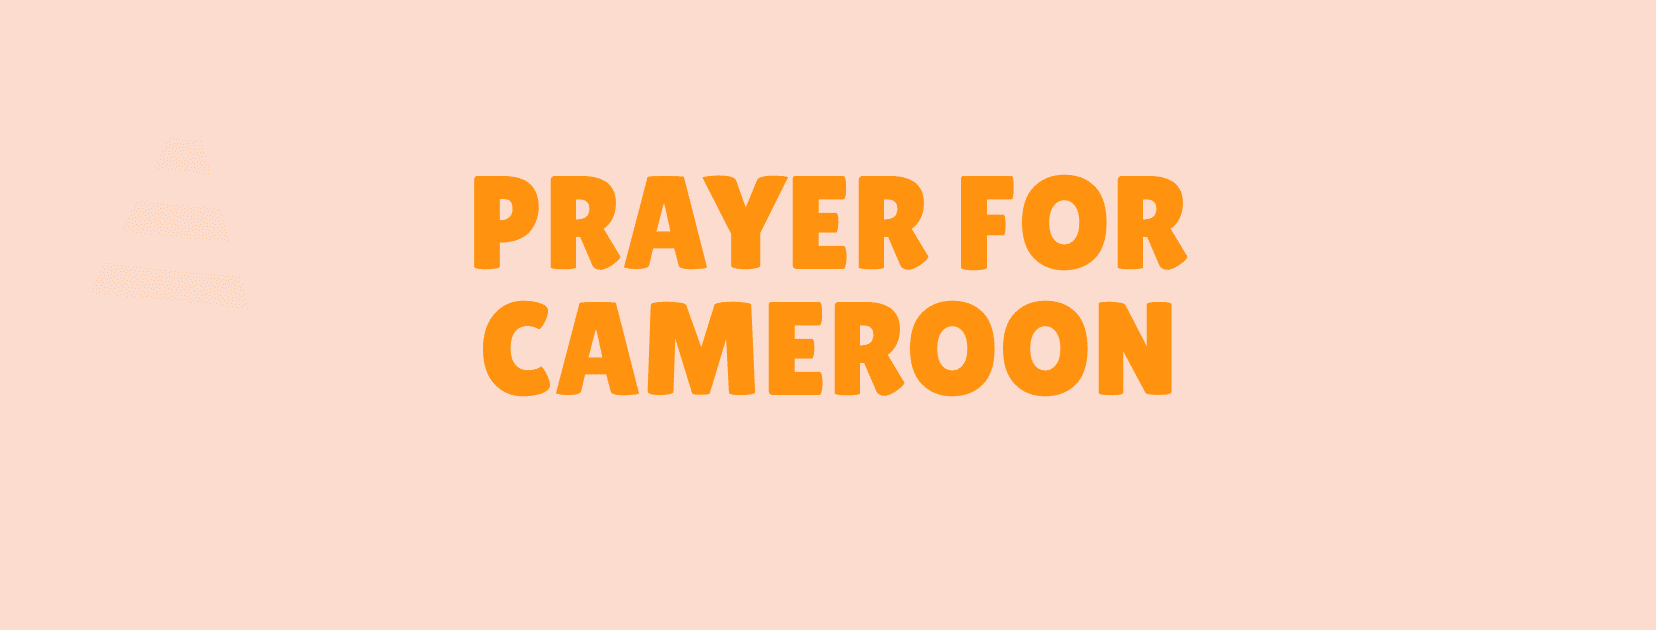 Kamerun üçün dua